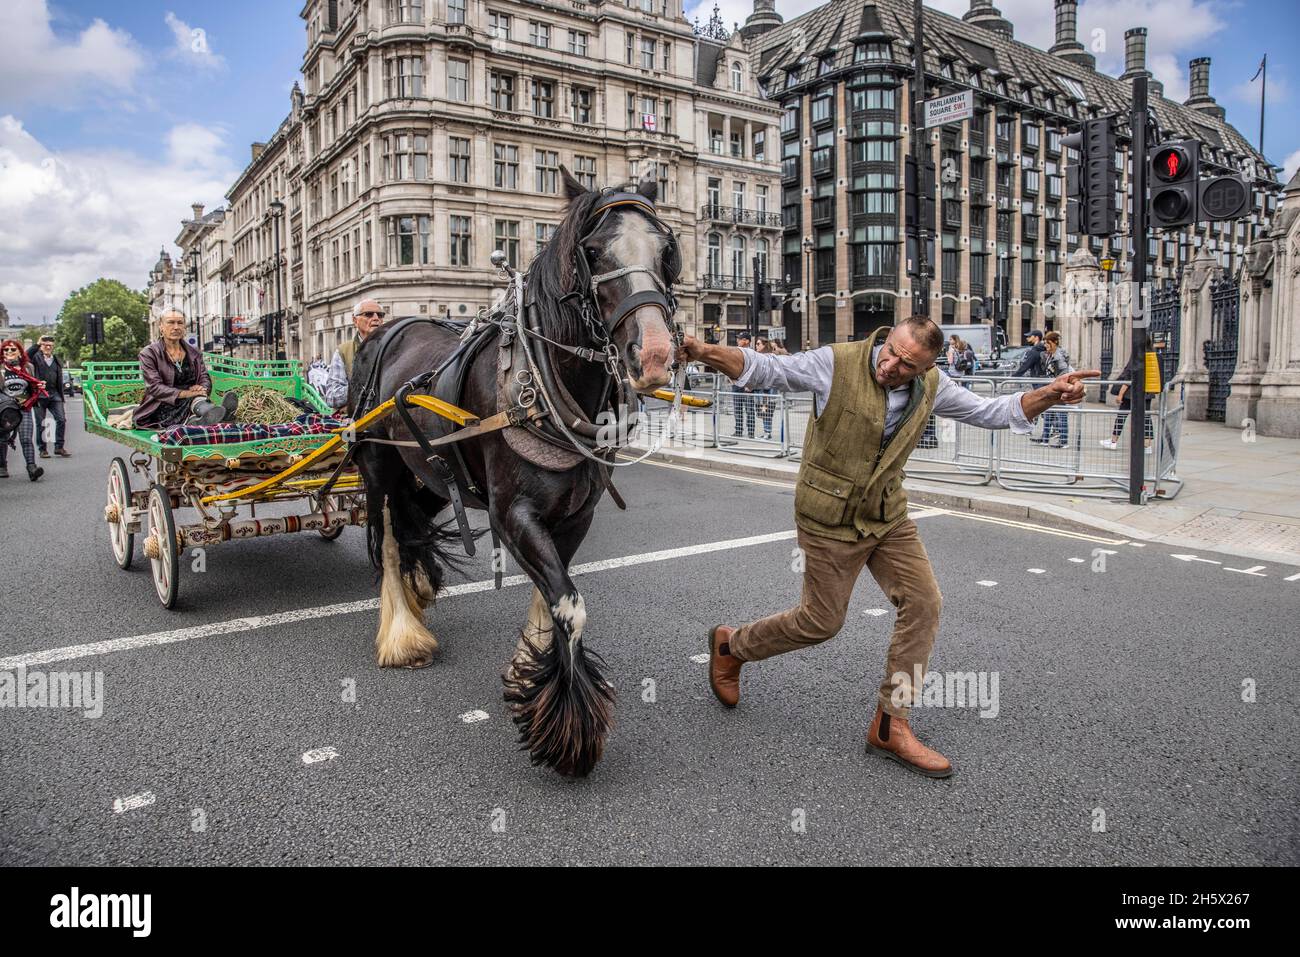 Roma-Zigeuner und irische Reisende kommen auf dem Parliament Square zusammen, um gegen ein Polizeigesetz zu protestieren, das ihre traditionelle Lebensweise bedroht. Stockfoto